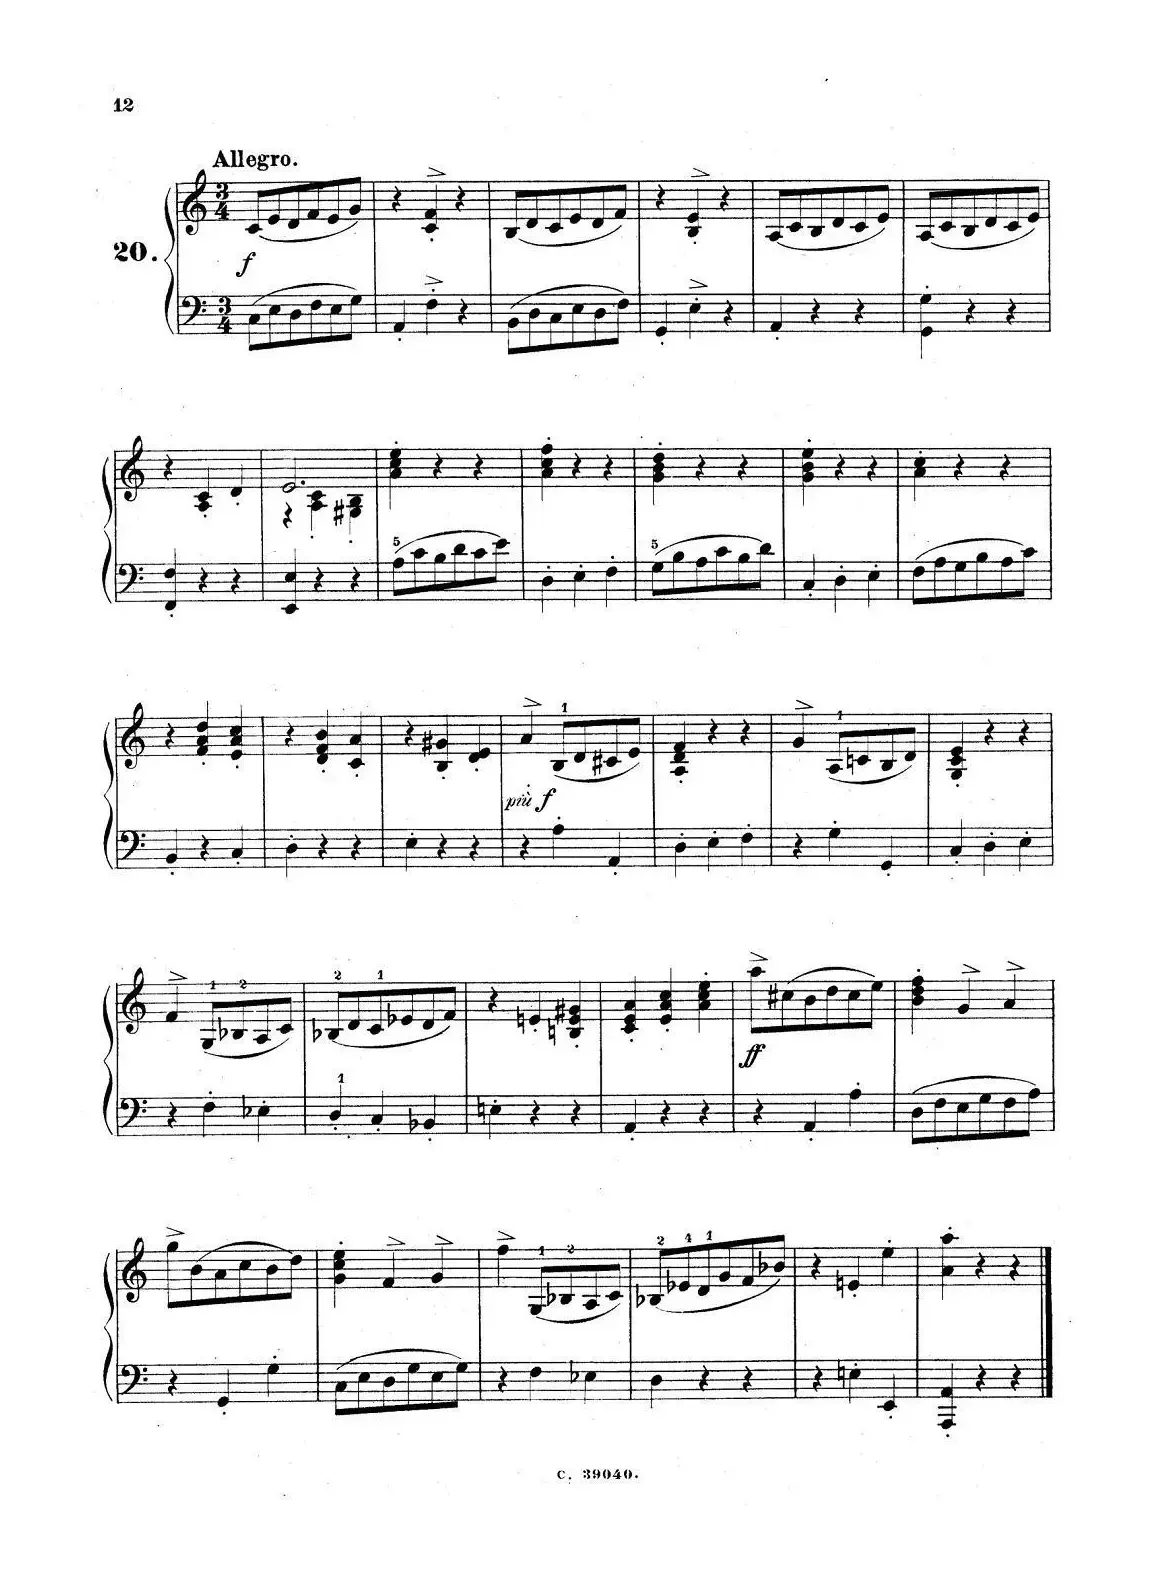 36 Etudes Rhythmiques et Melodiques Op.105（36首节奏与旋律练习曲 16—20）